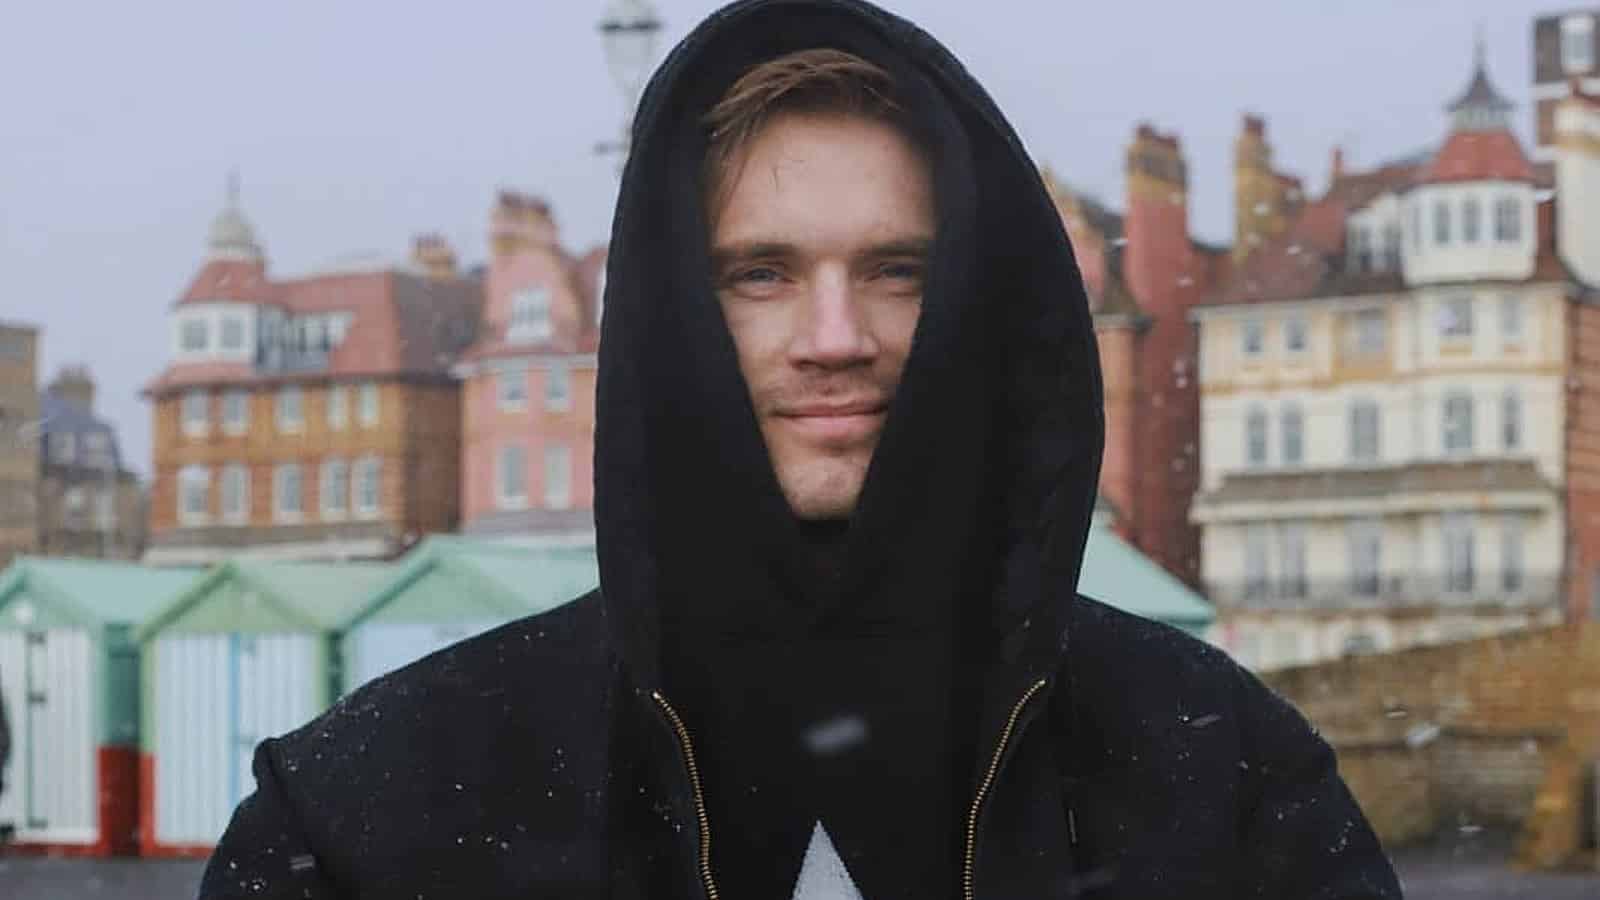 PewDiePie wearing hoodie in the snow